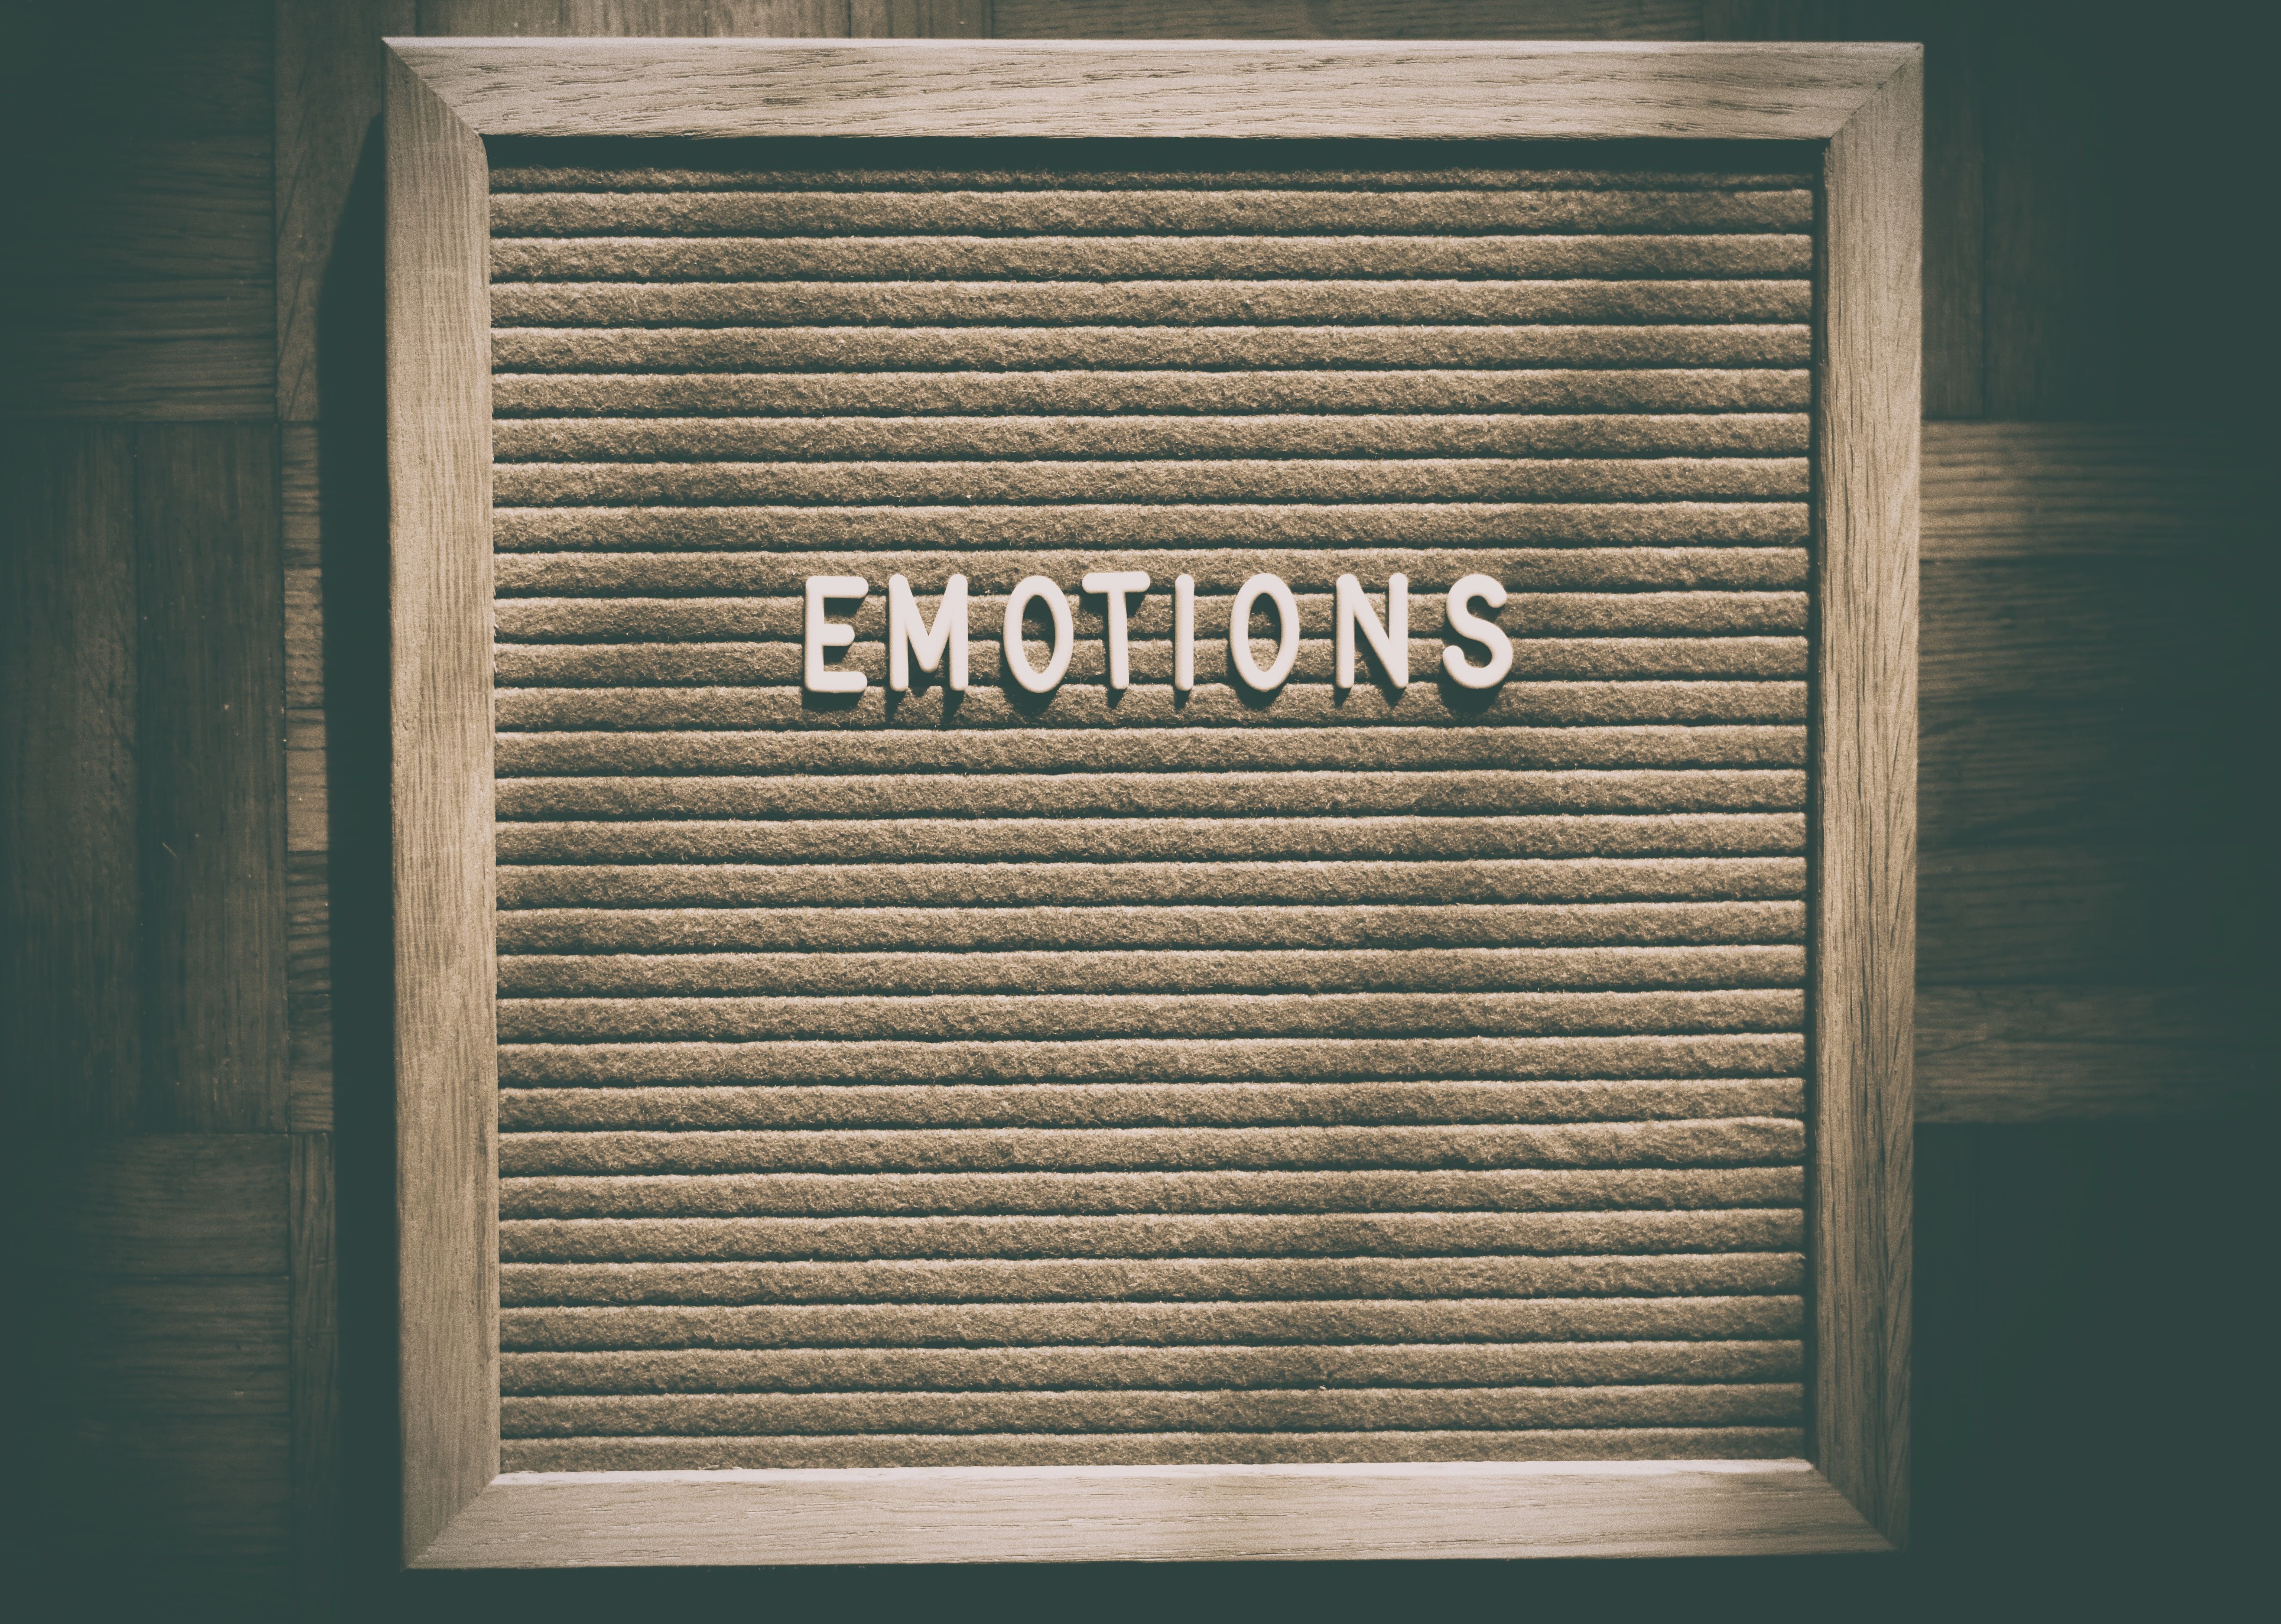 Emotions written on a letter board